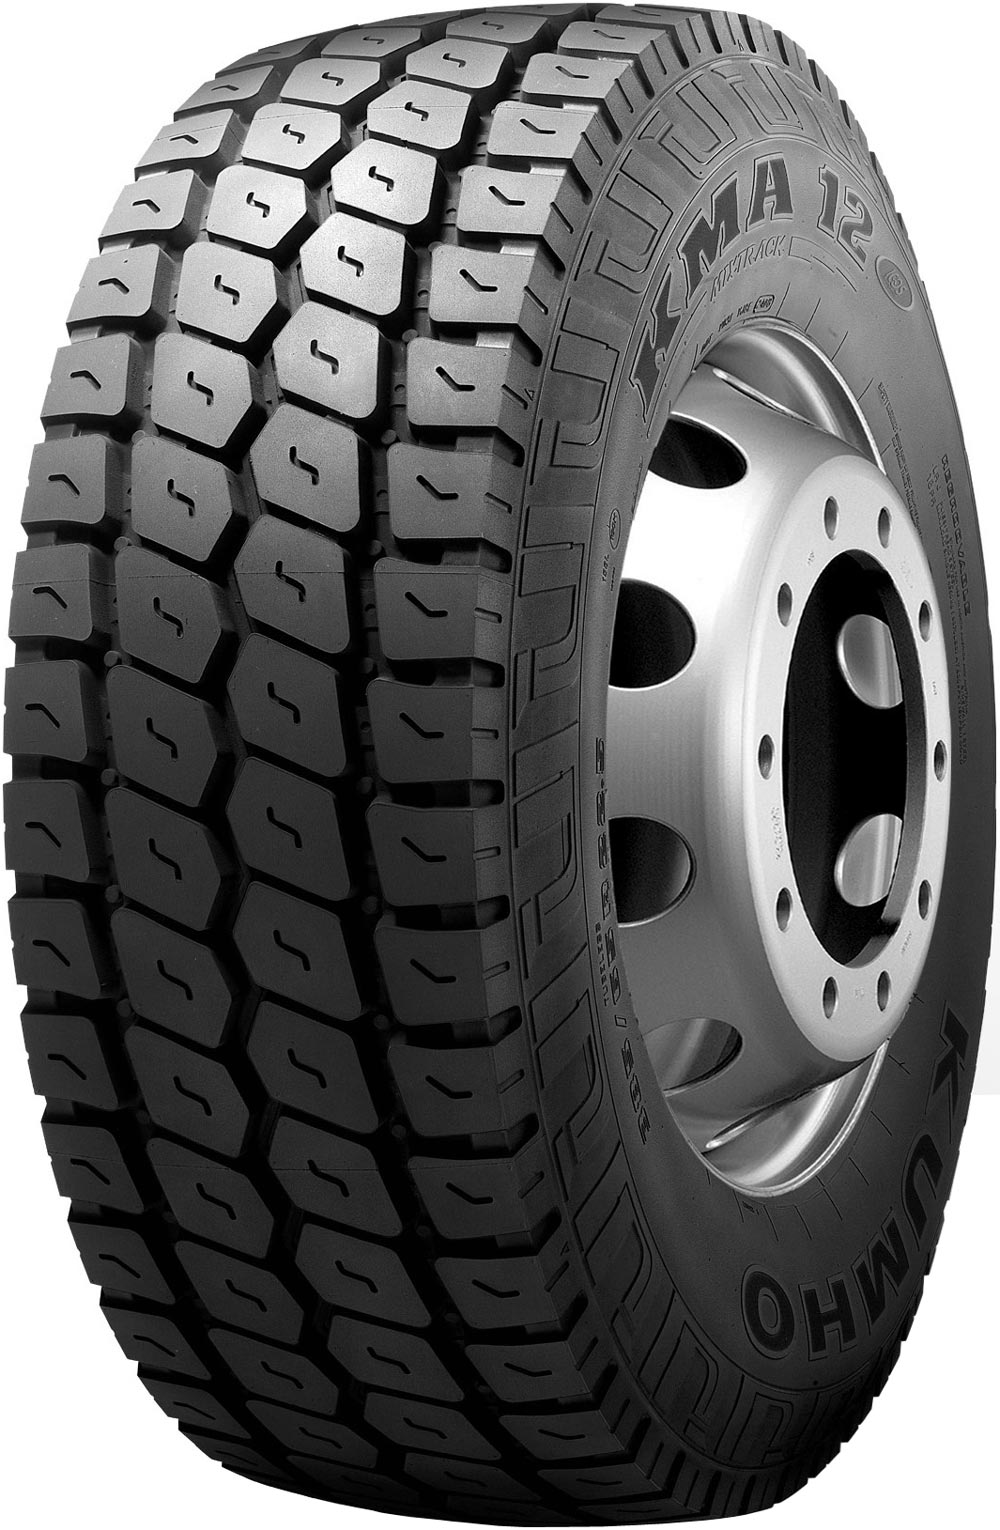 product_type-heavy_tires KUMHO KMA12 TL 445/65 R22.5 169K